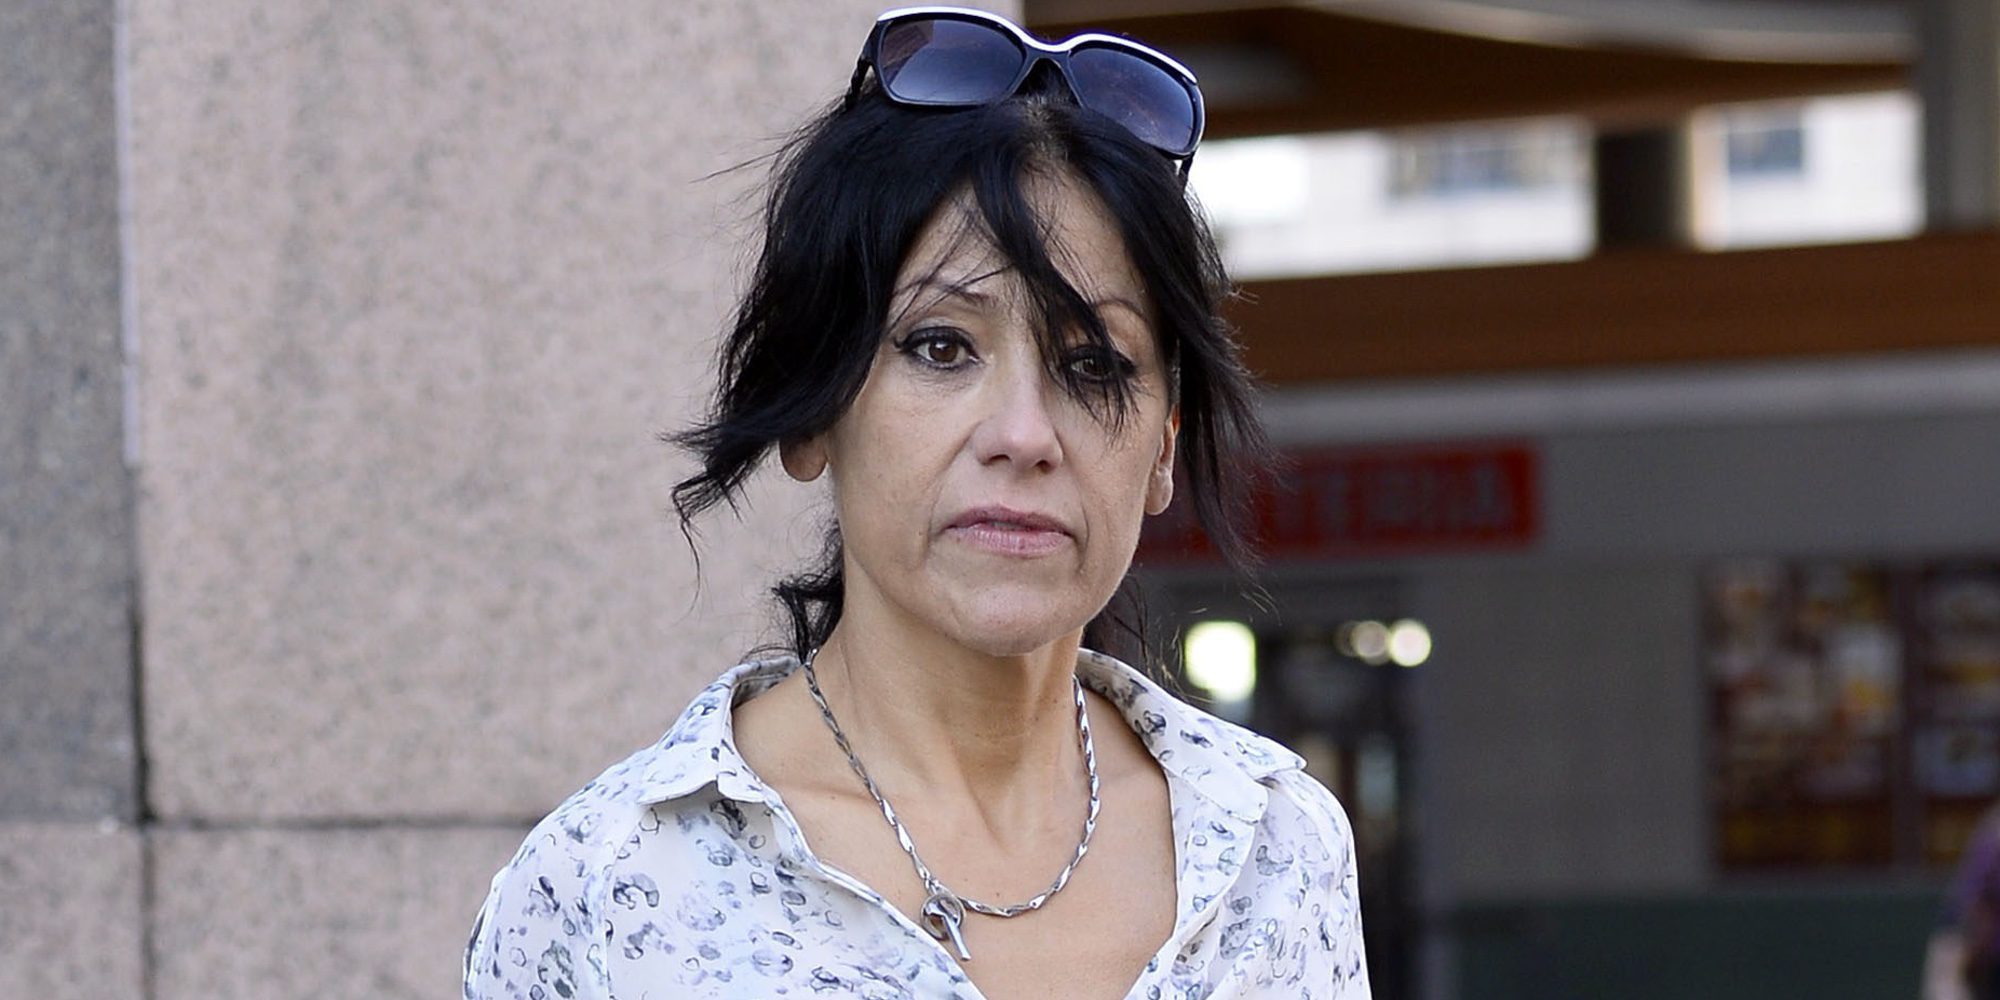 Maite Galdeano traspasa los límites tras el atentado de Barcelona: "Son putos moros. Echémoslos a su país"